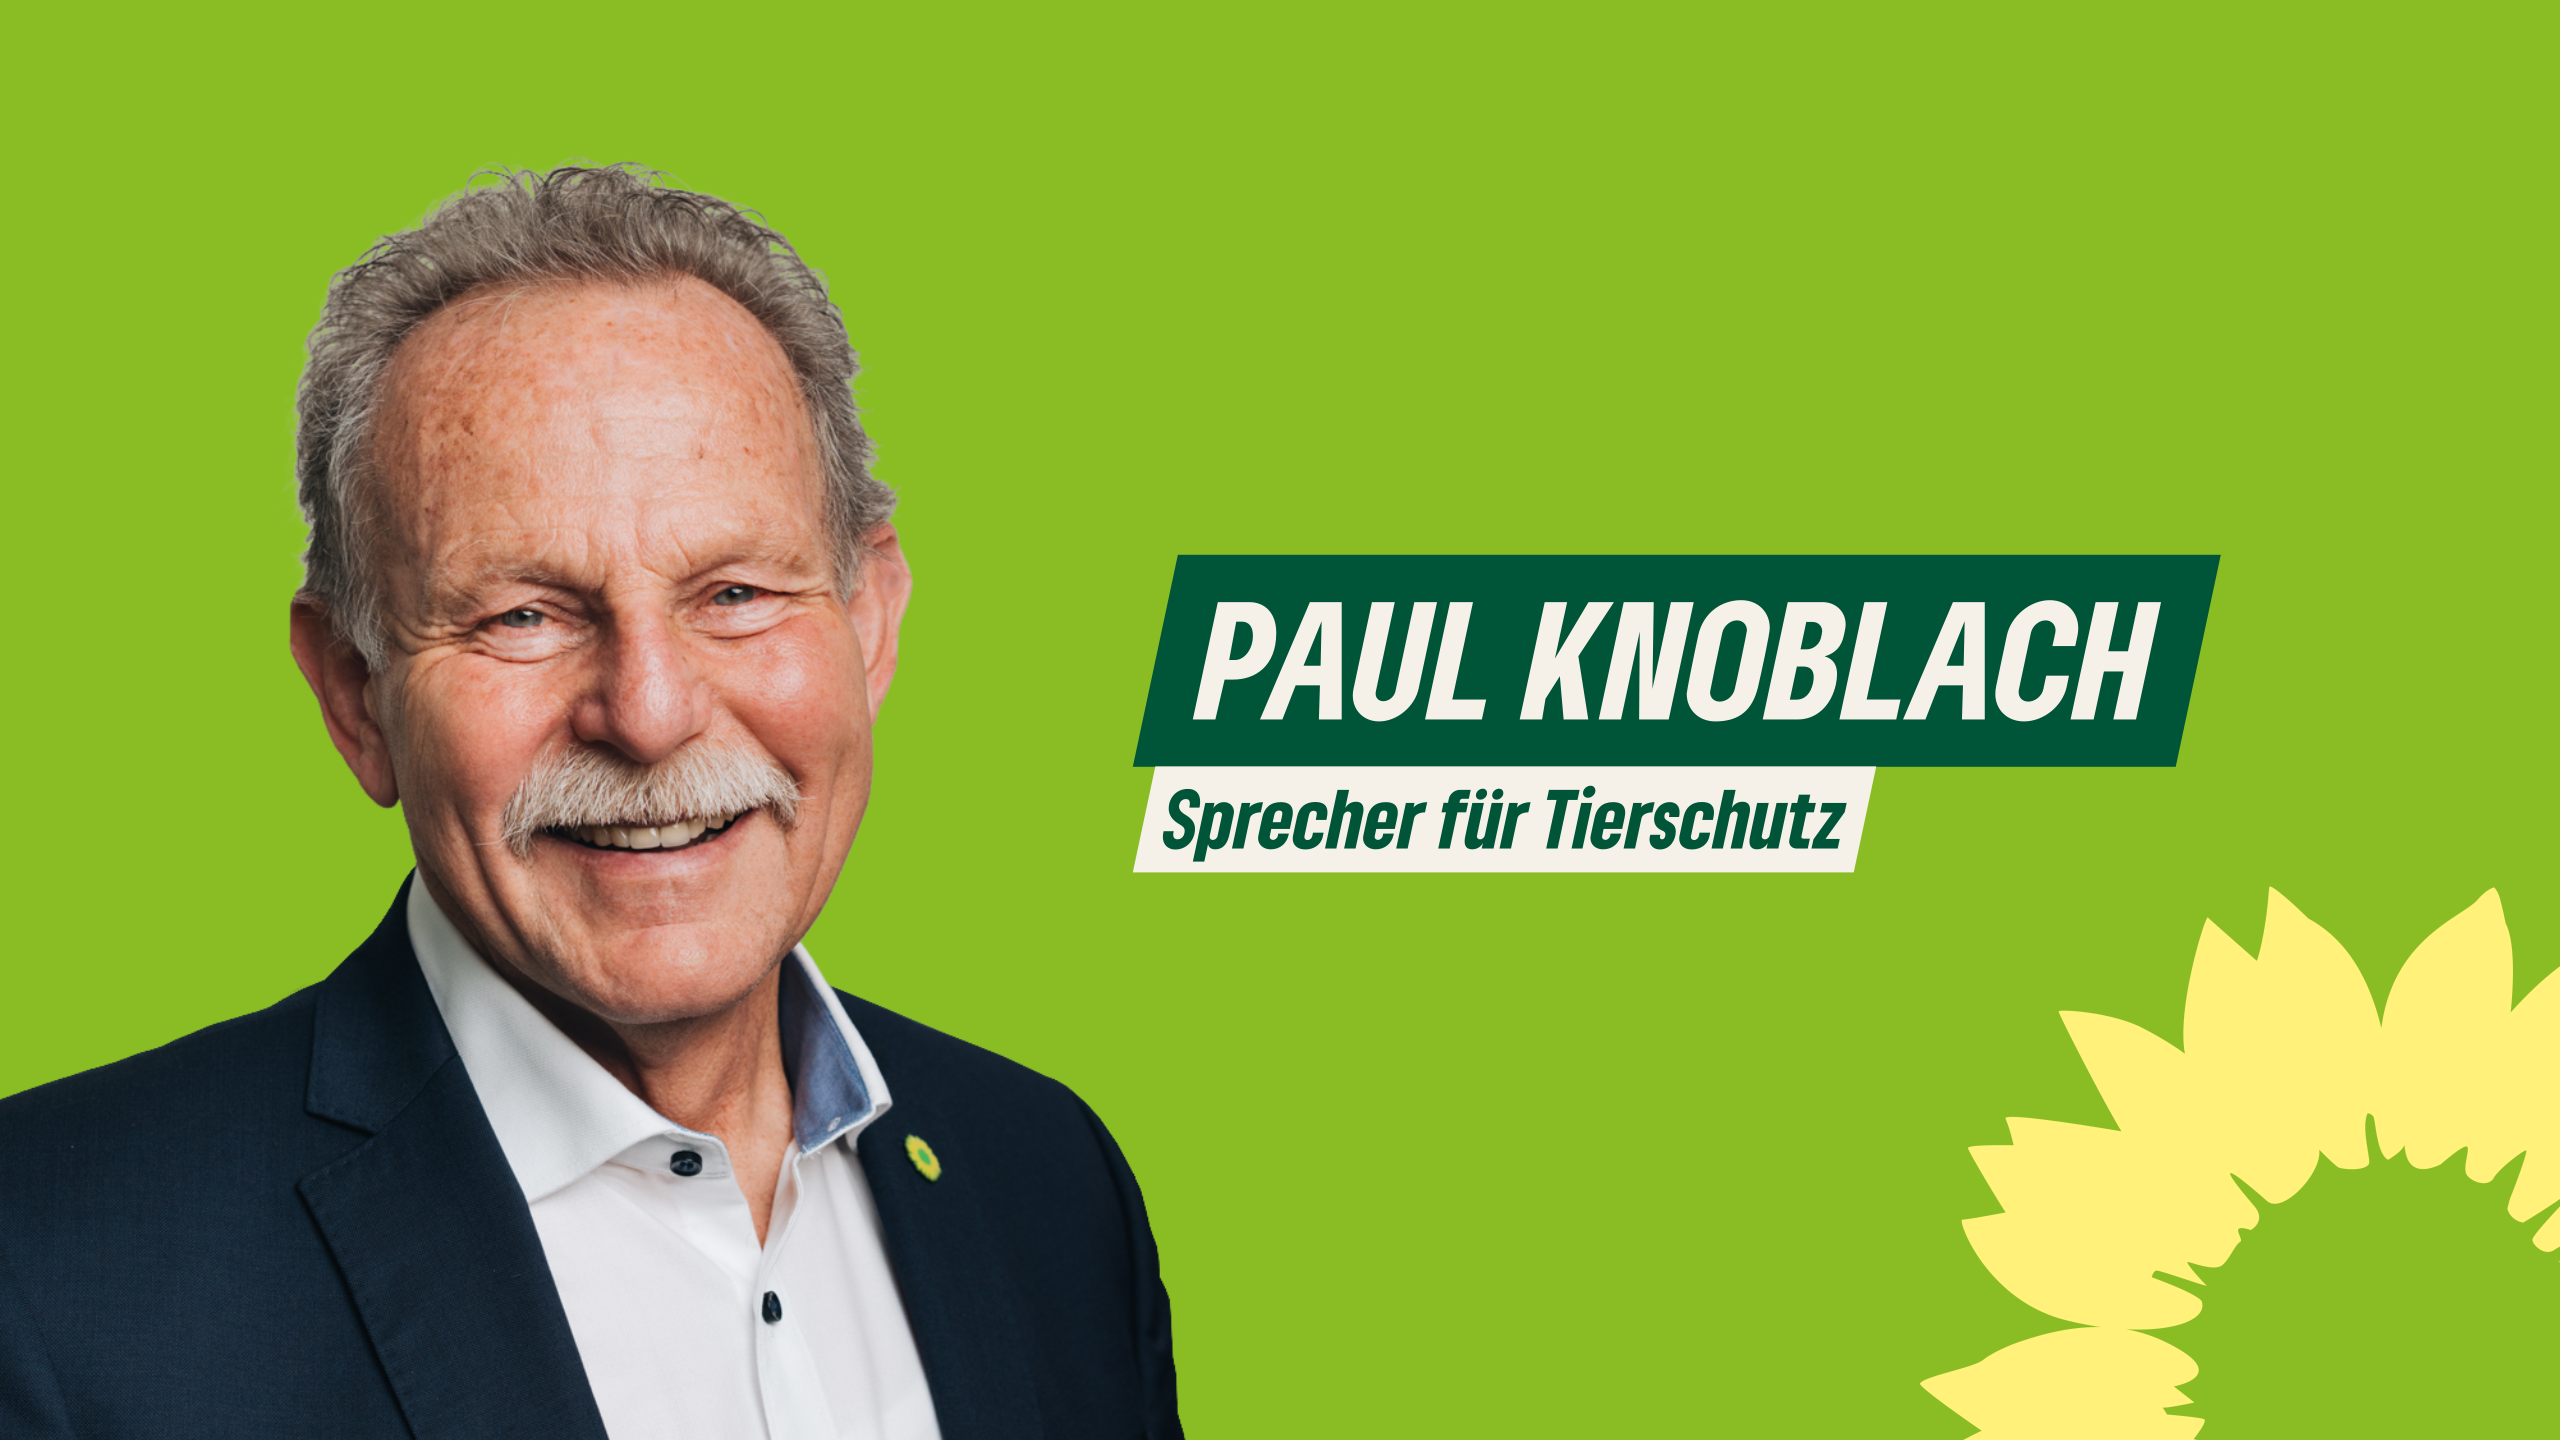 Paul Knoblach, MdL - Sprecher für Tierschutz der Fraktion BÜNDNIS 90/DIE GRÜNEN im Bayerischen Landtag